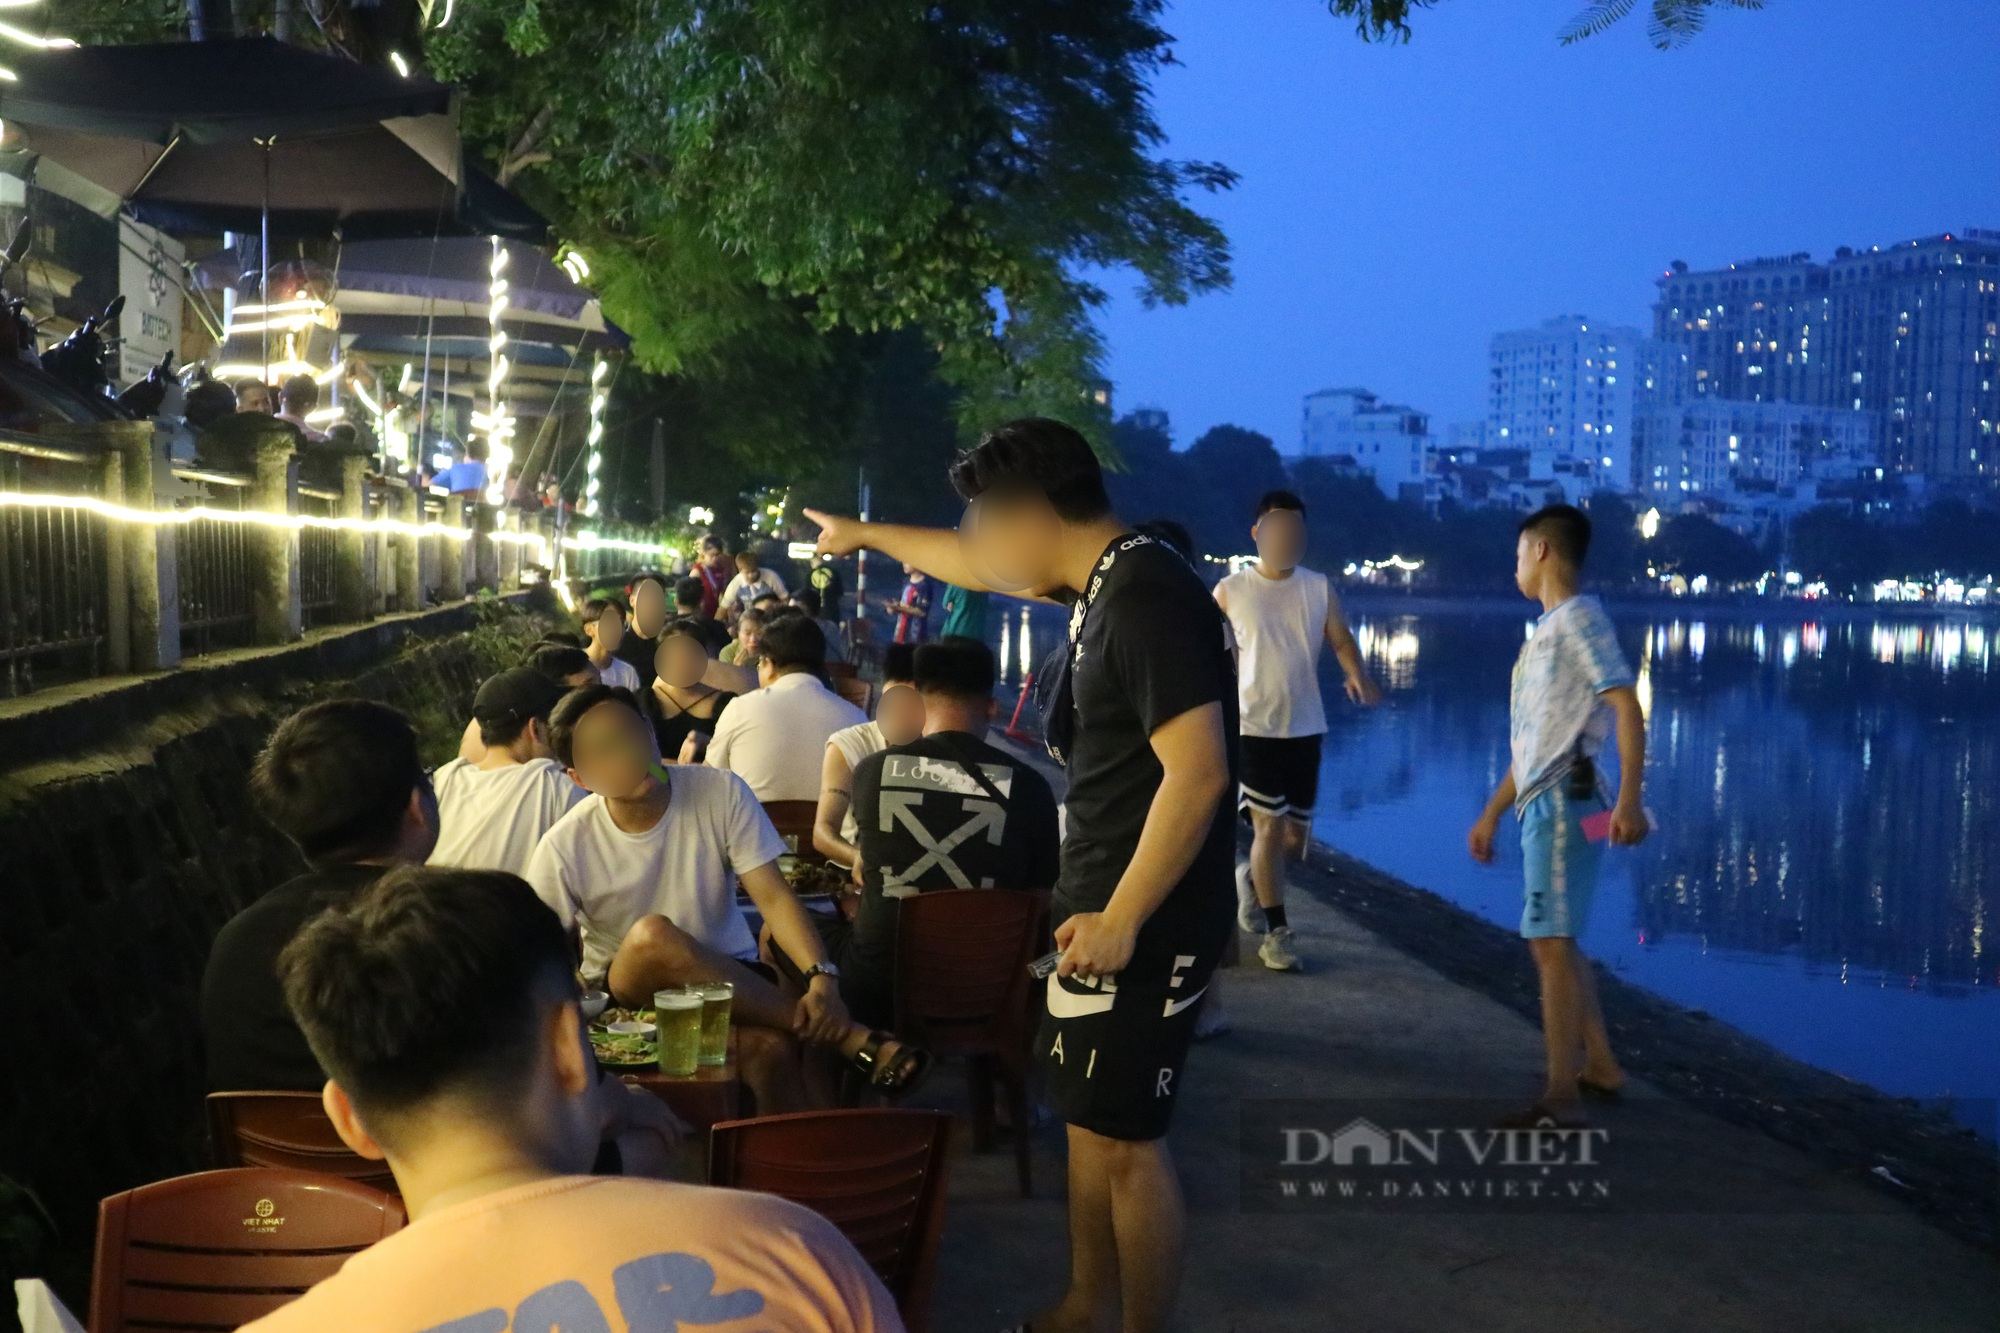 Hà Nội: Chật kín bàn nhậu quanh vỉa hè hồ Hoàng Cầu - Ảnh 2.